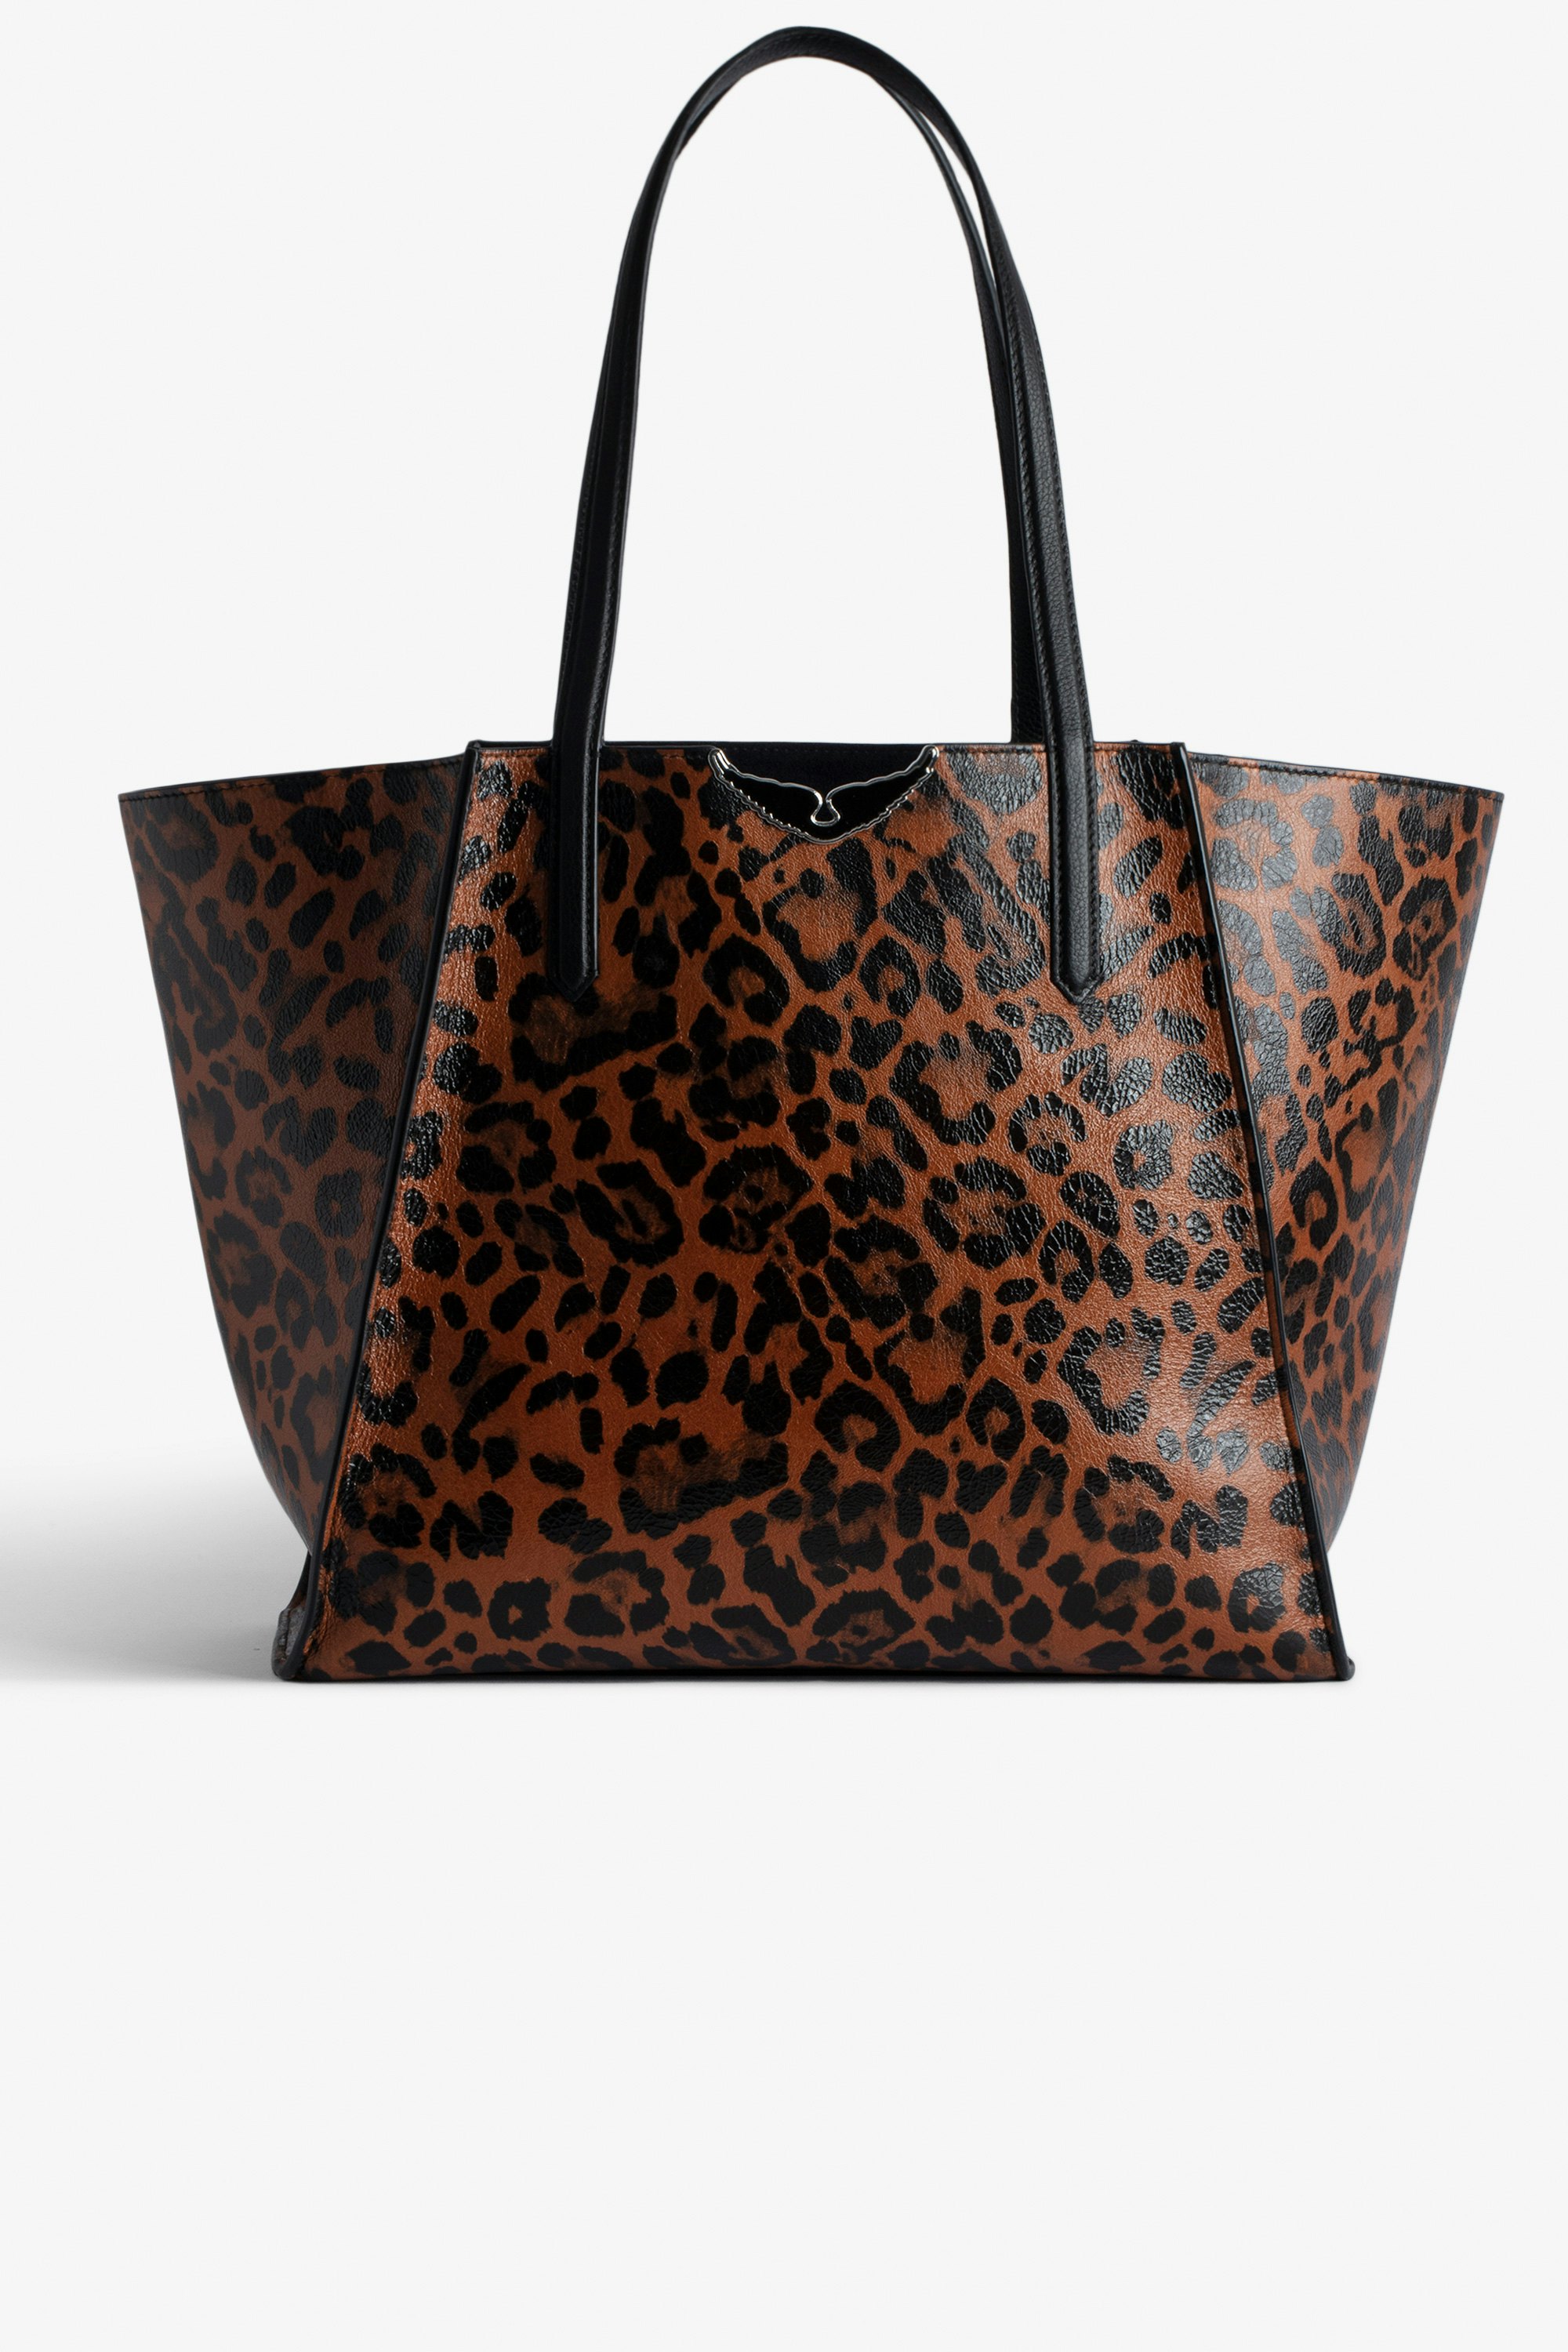 Bolso Le Borderline Leopardo Bolso tote reversible marrón de piel brillante con estampado de leopardo con asa metálica y alas para mujer.